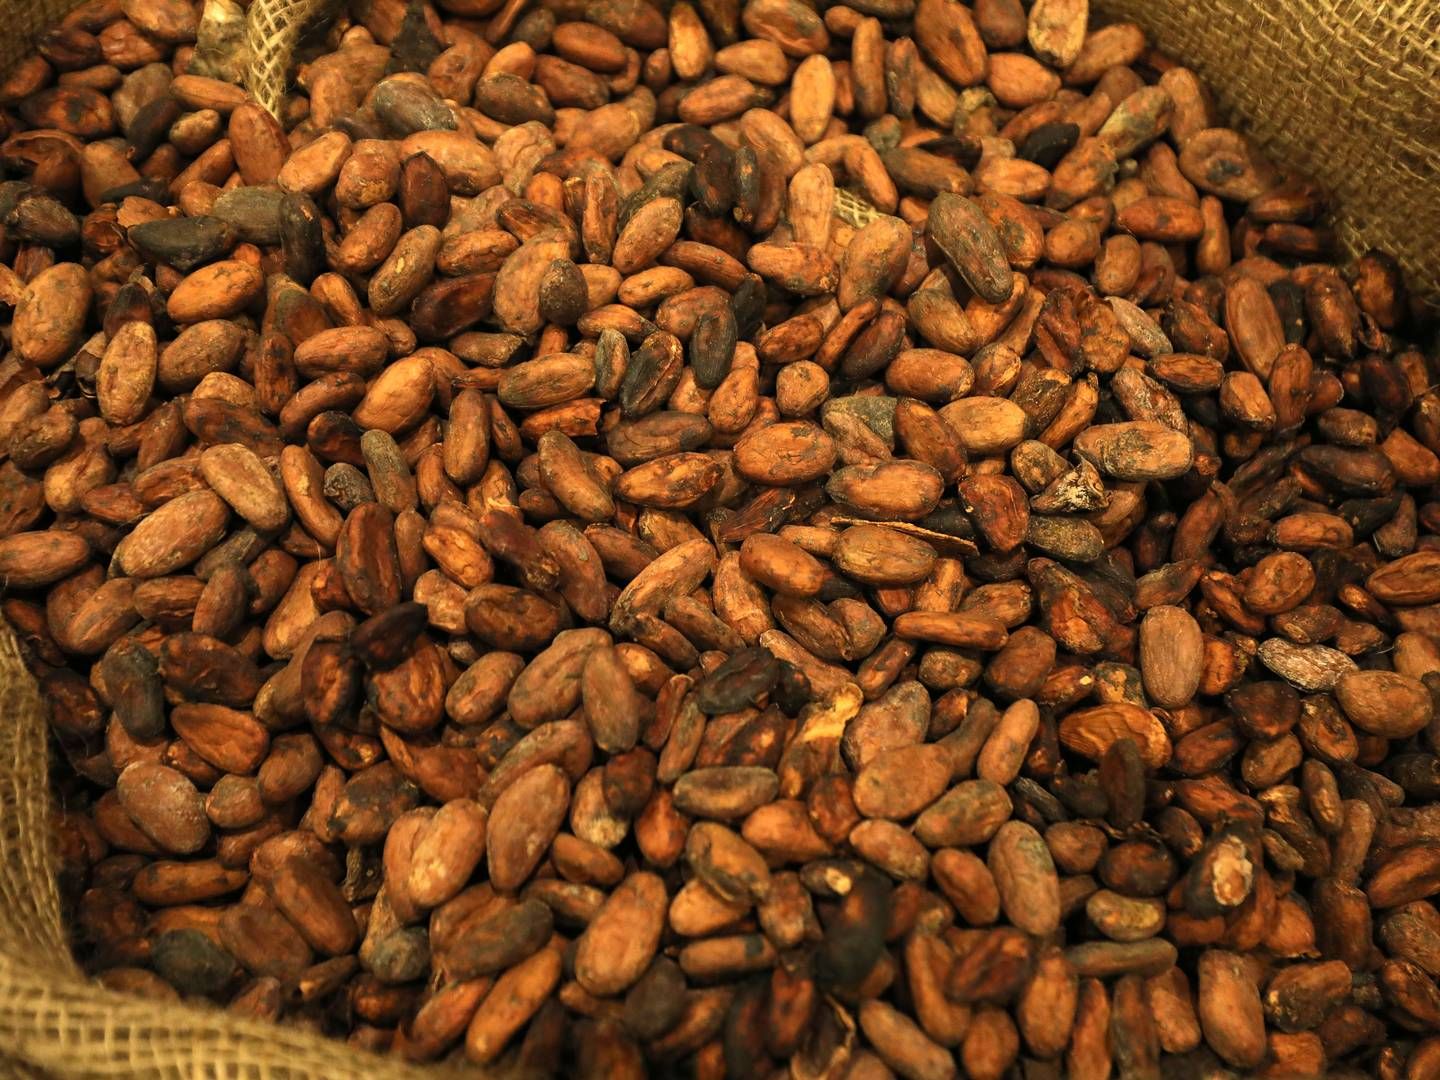 I årevis er der ikke blevet plantet nye kakaotræer på mange vestafrikanske plantager, der som følge har set høstudbyttet falde.